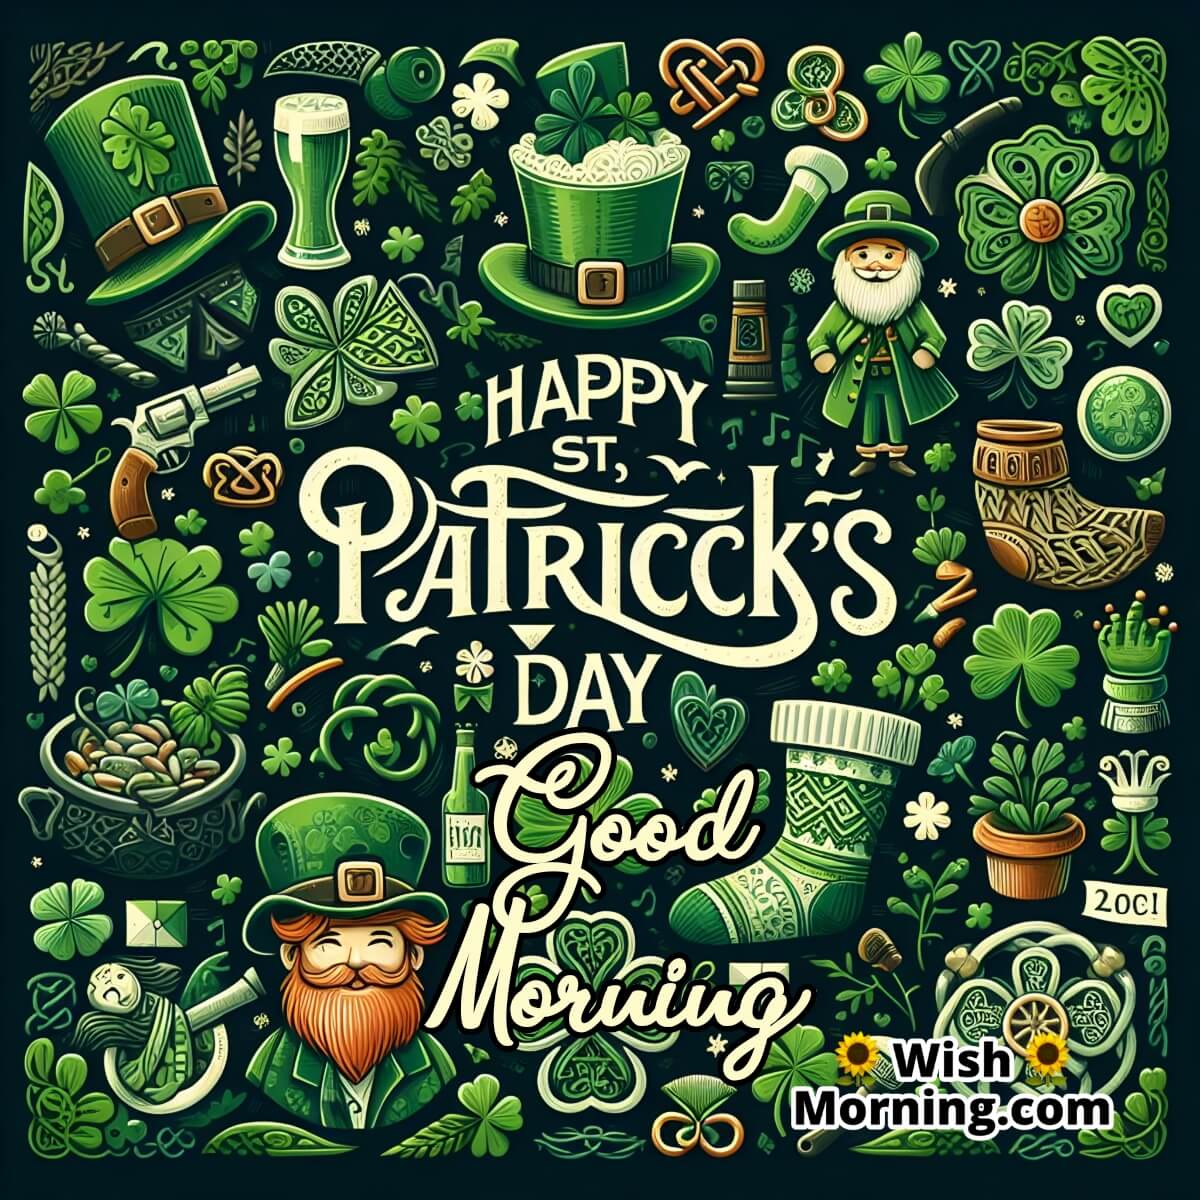 Good Morning St. Patrick's Day Irish Symbols